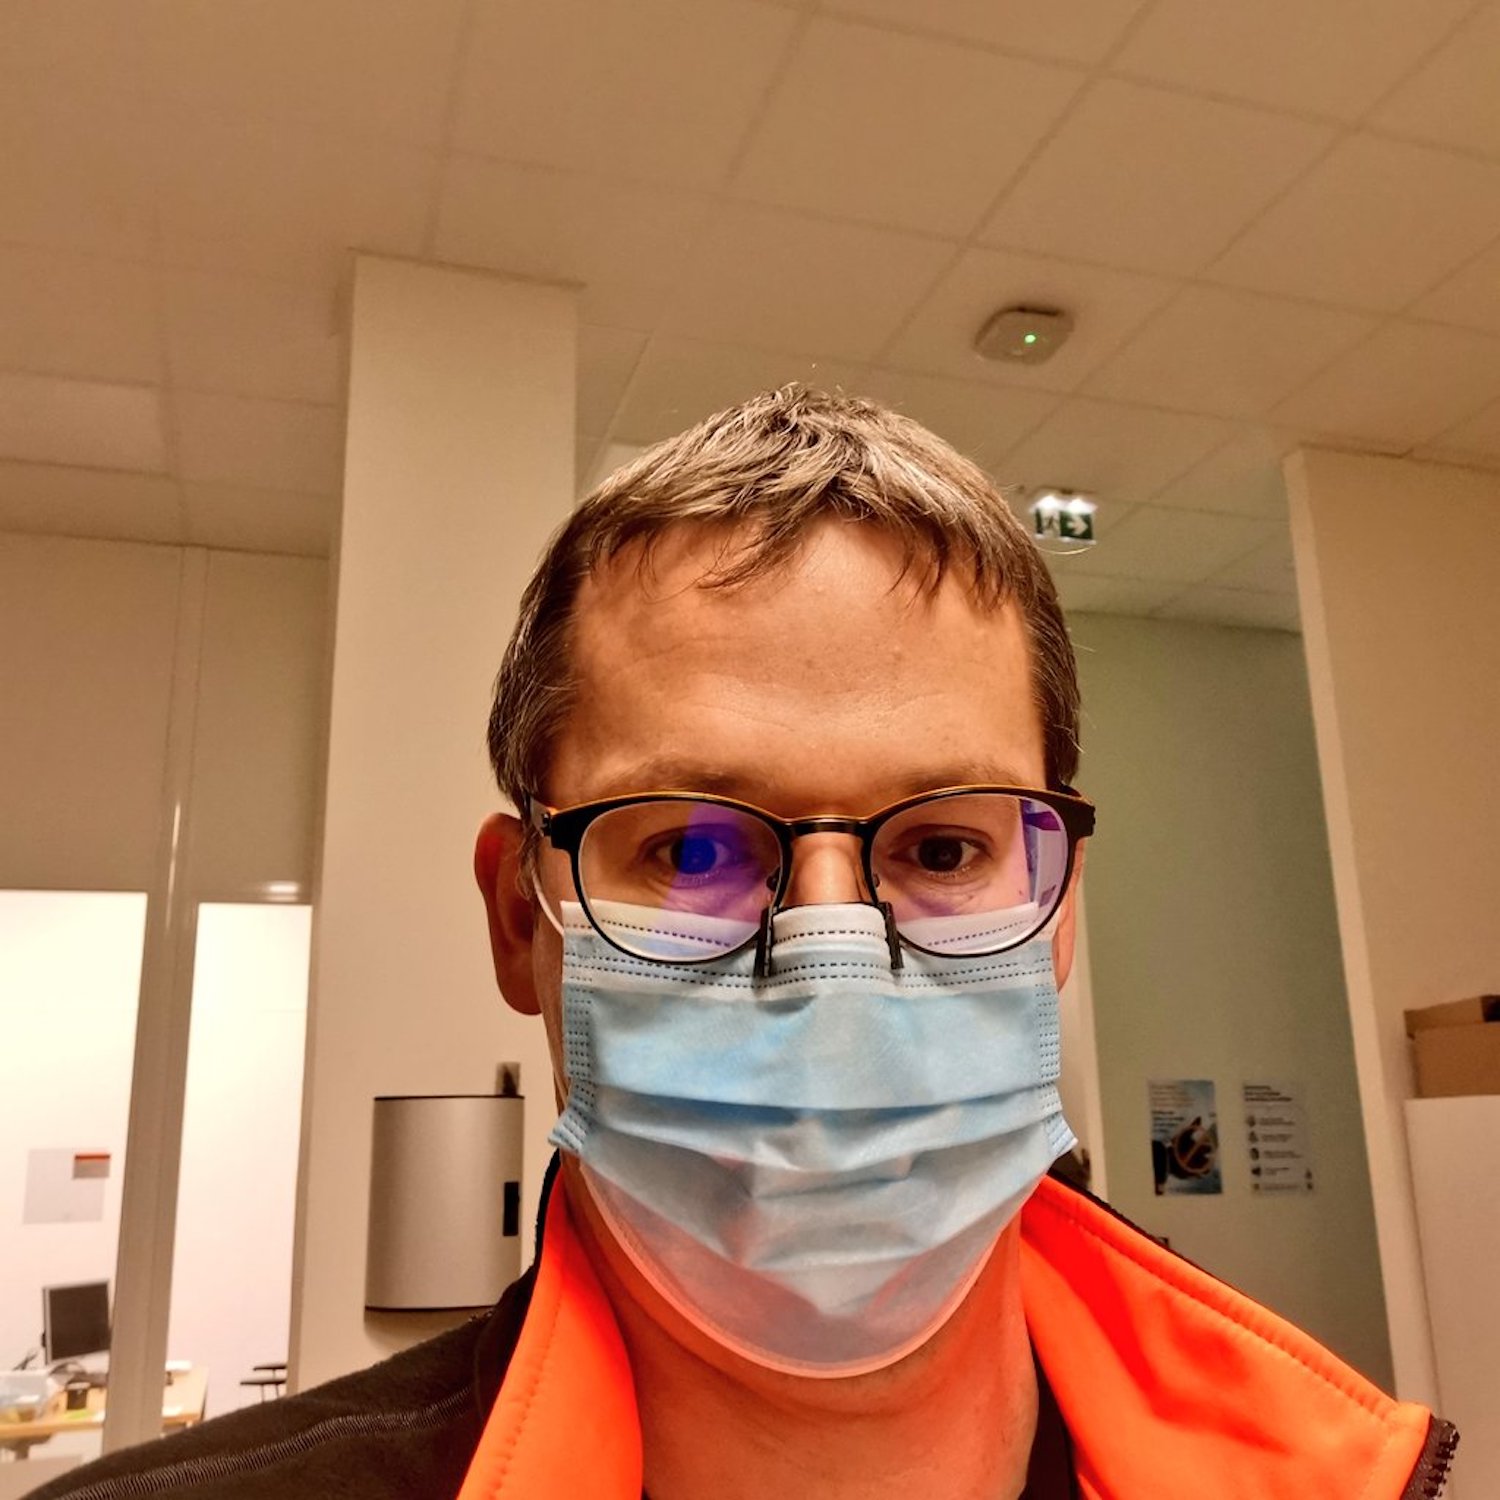 Impression 3D : Gérald Defoing a conçu un pince-nez anti-buée pour ceux qui portent des lunettes